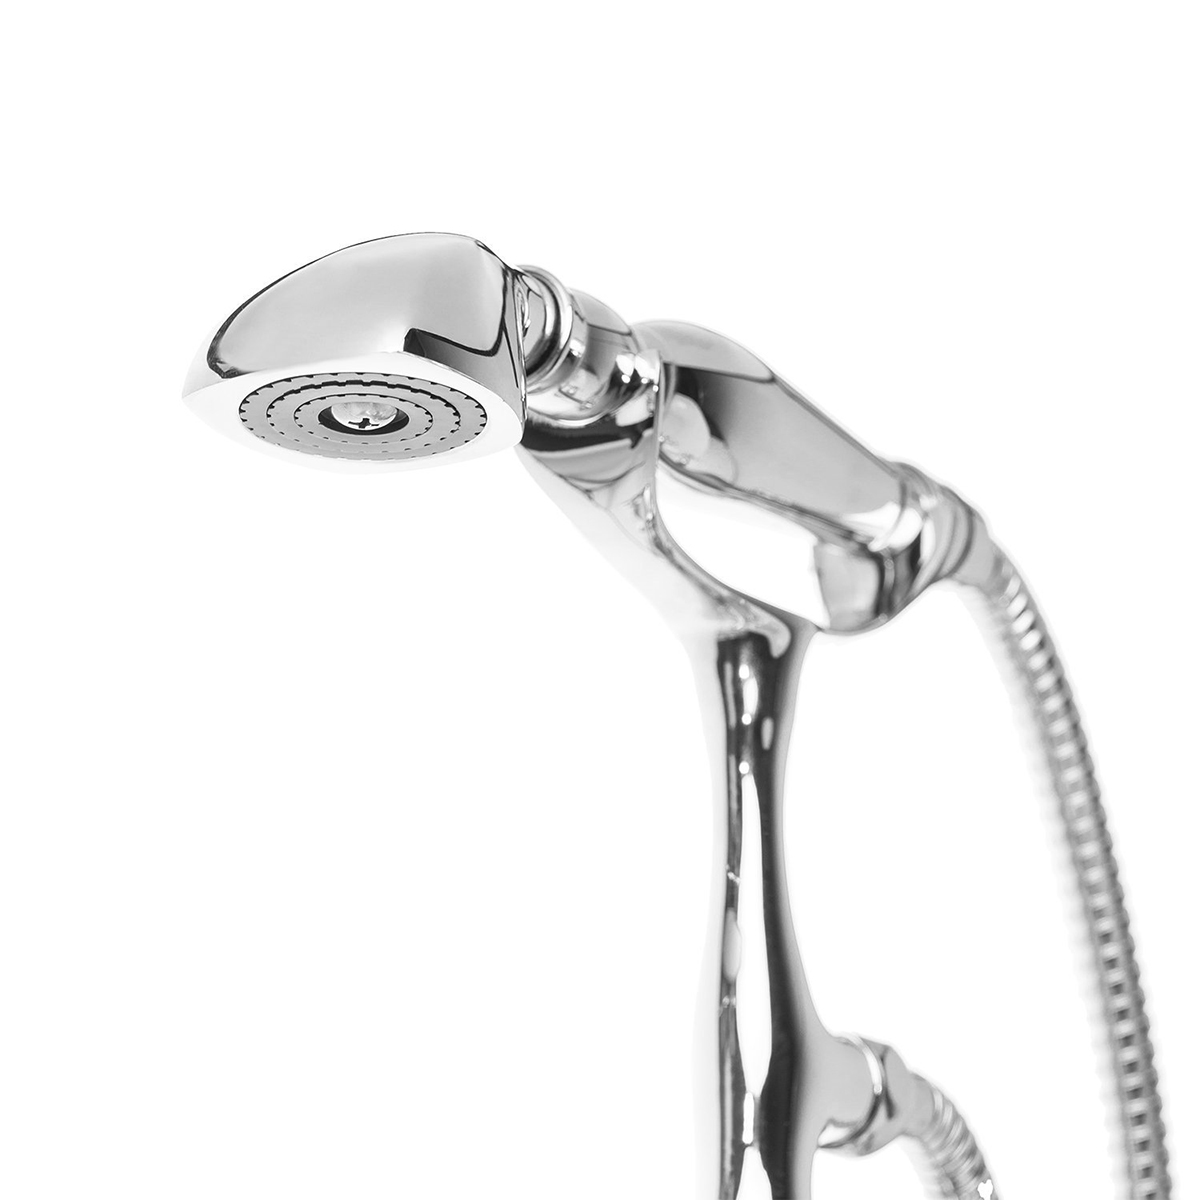 Stile di design del telefono Rubinetto per vasca da bagno con riempitivo per vasca indipendente montato a pavimento con 3 maniglie girevoli